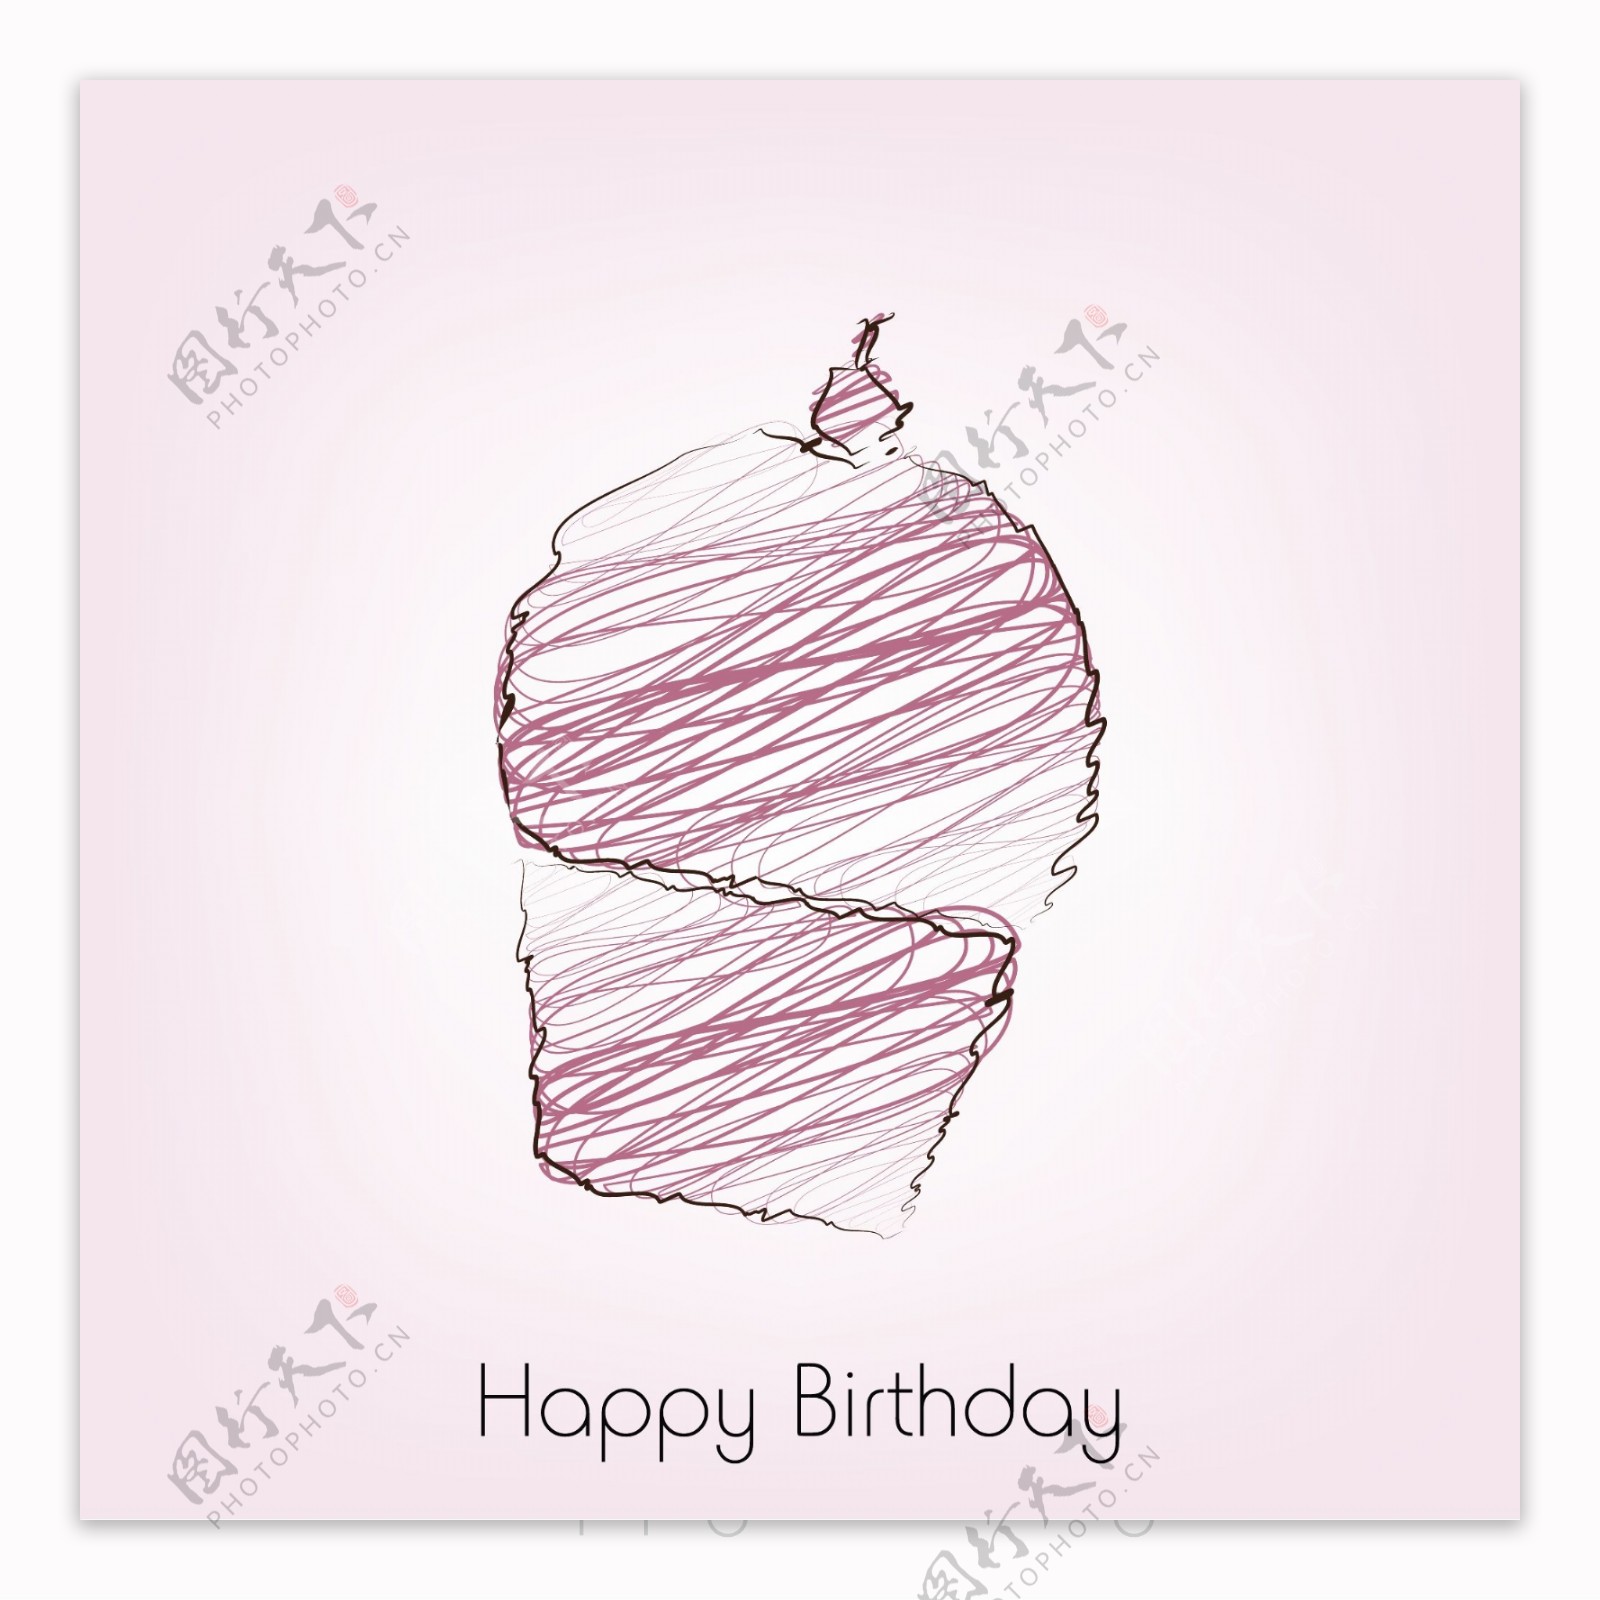 美味的生日蛋糕上粉色的背景